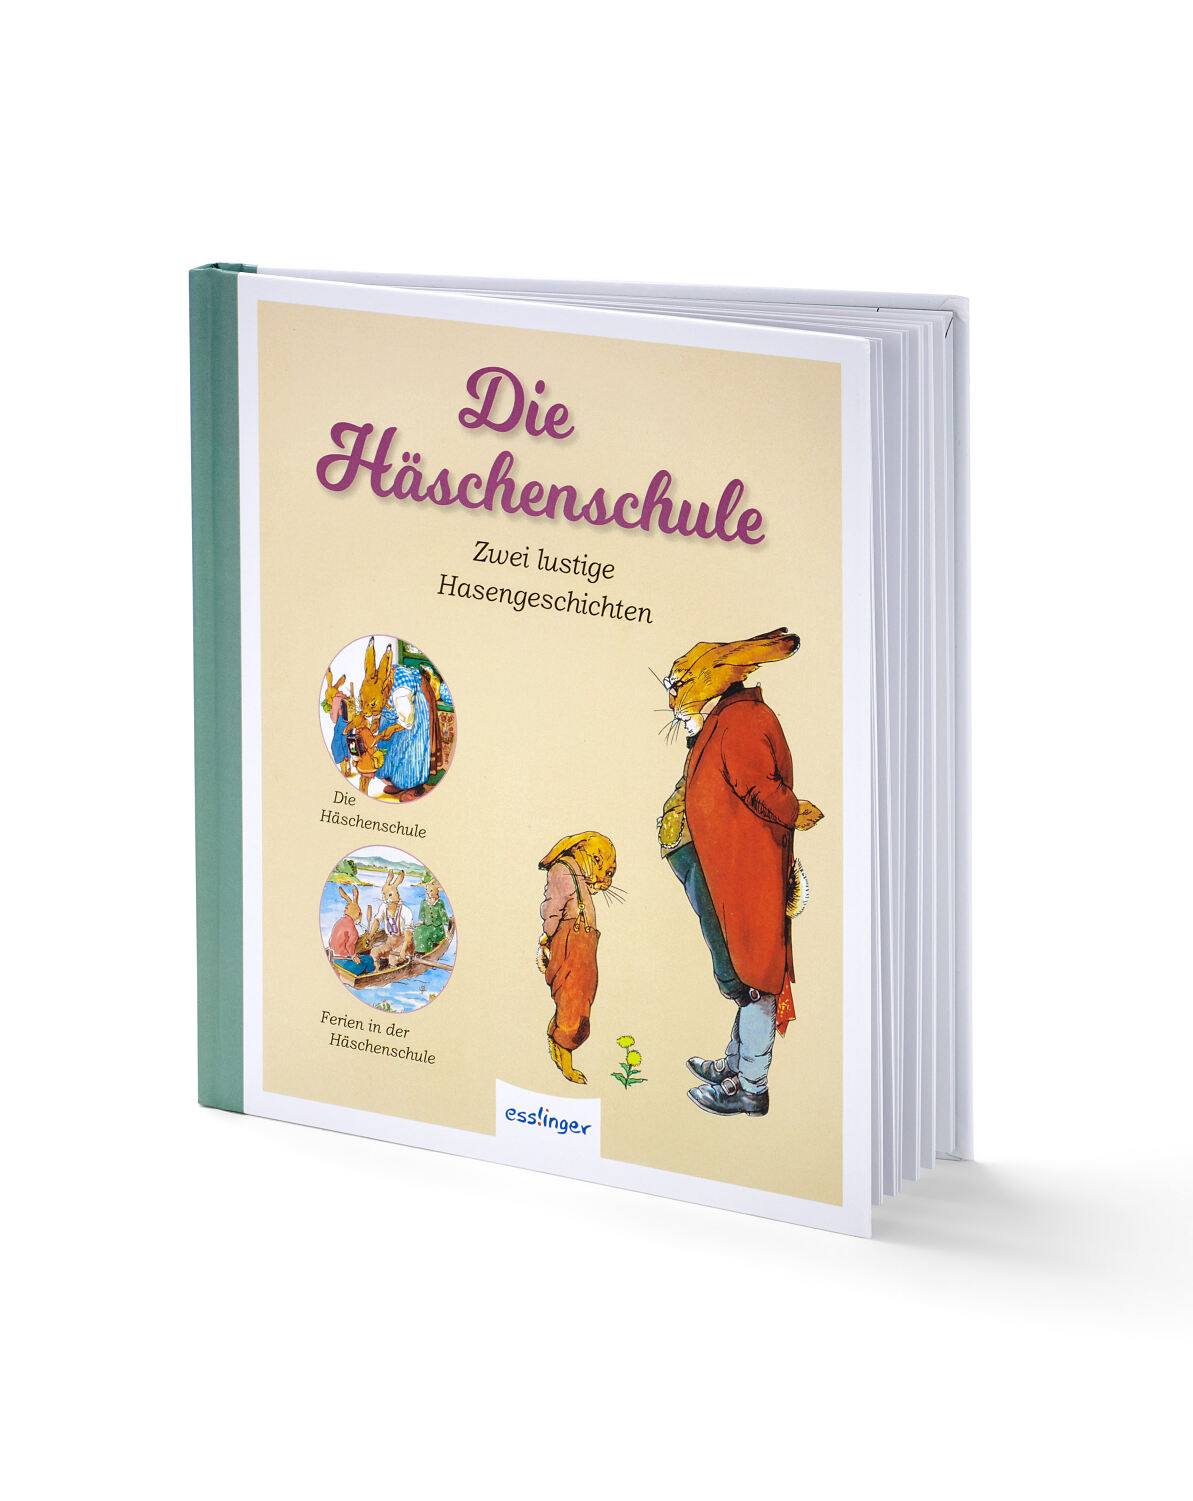 TCHIBO_128707 Buch »Die Häschenschule« FS 1 12.23